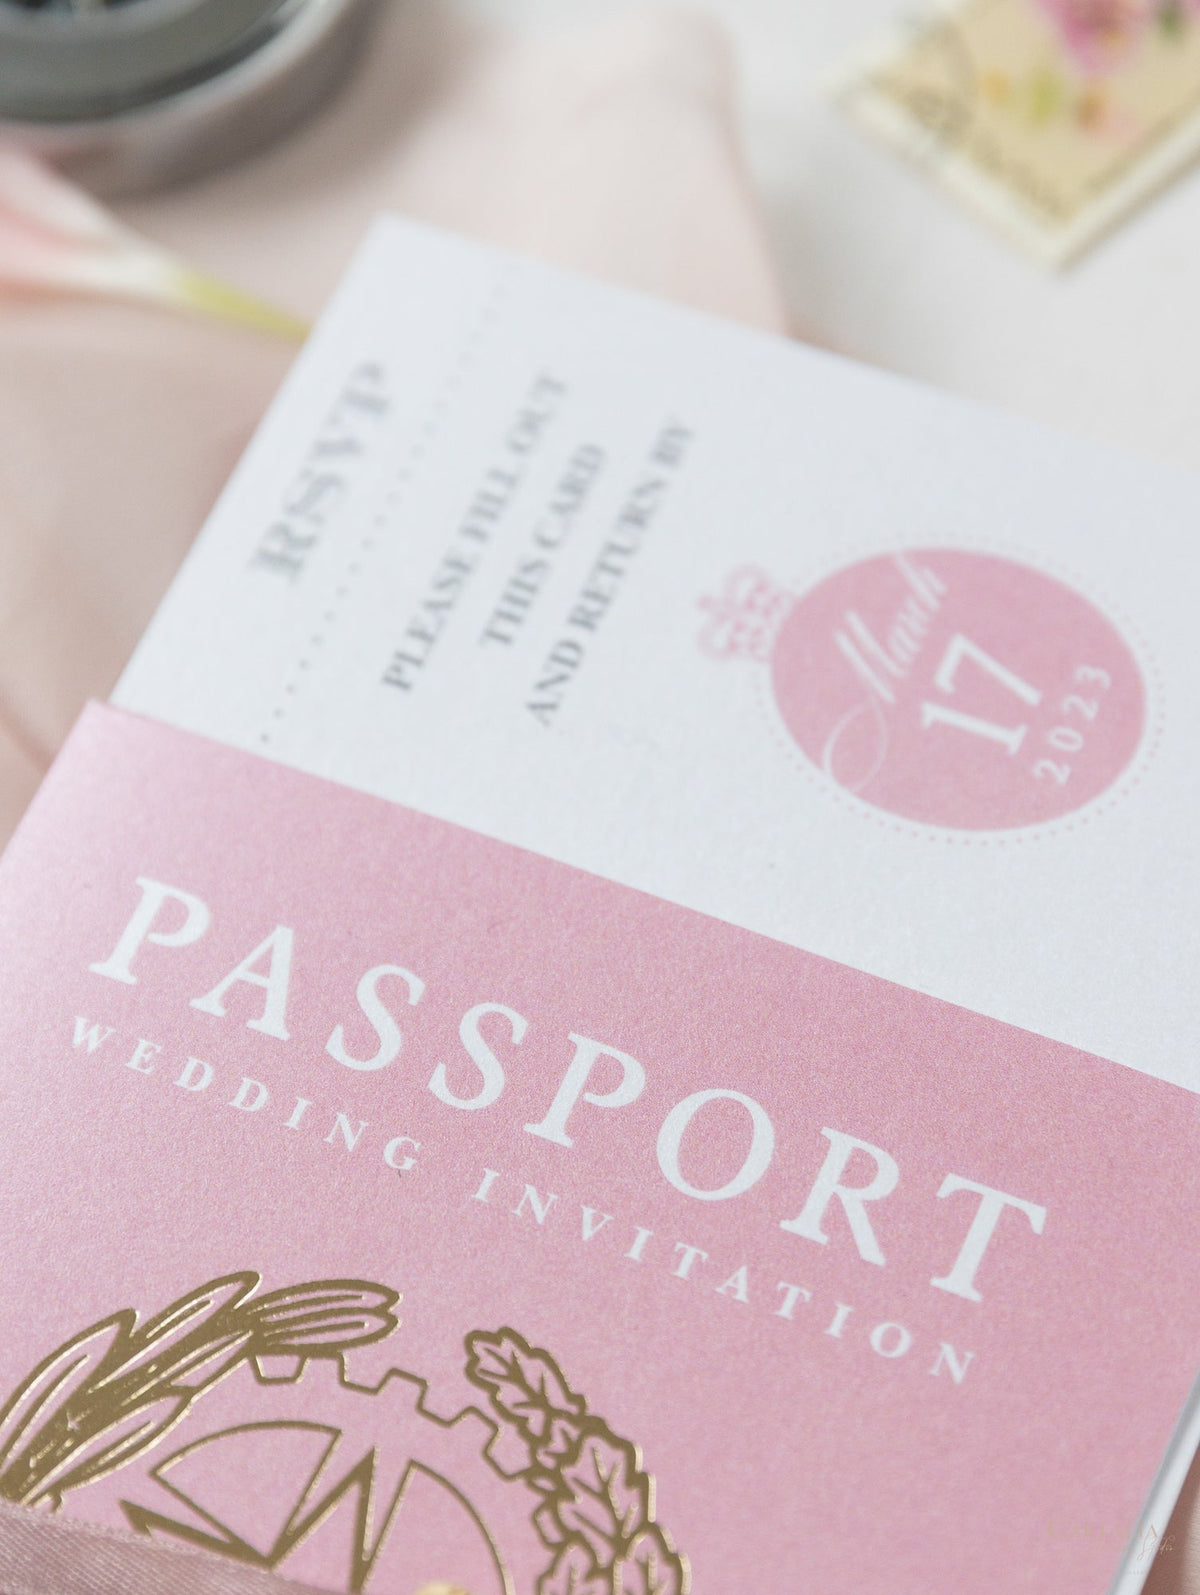 Invito a nozze con passaporto rosa cipria - aereo di lusso inciso su passaporto in plexi oro e matrimonio con destinazione in vera lamina d'oro